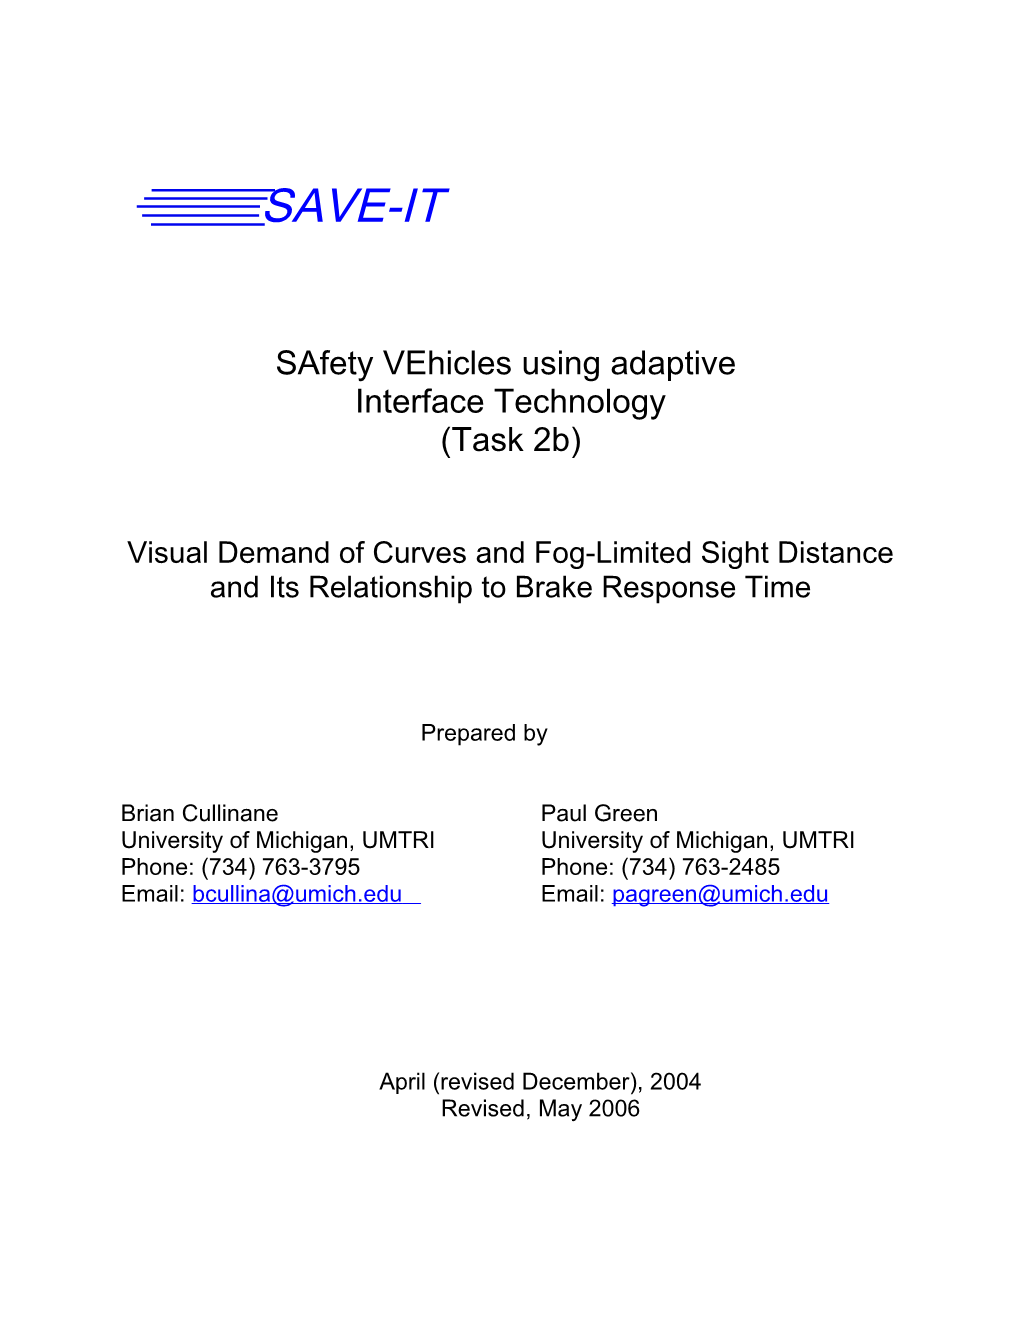 Safety Vehicles Using Adaptive